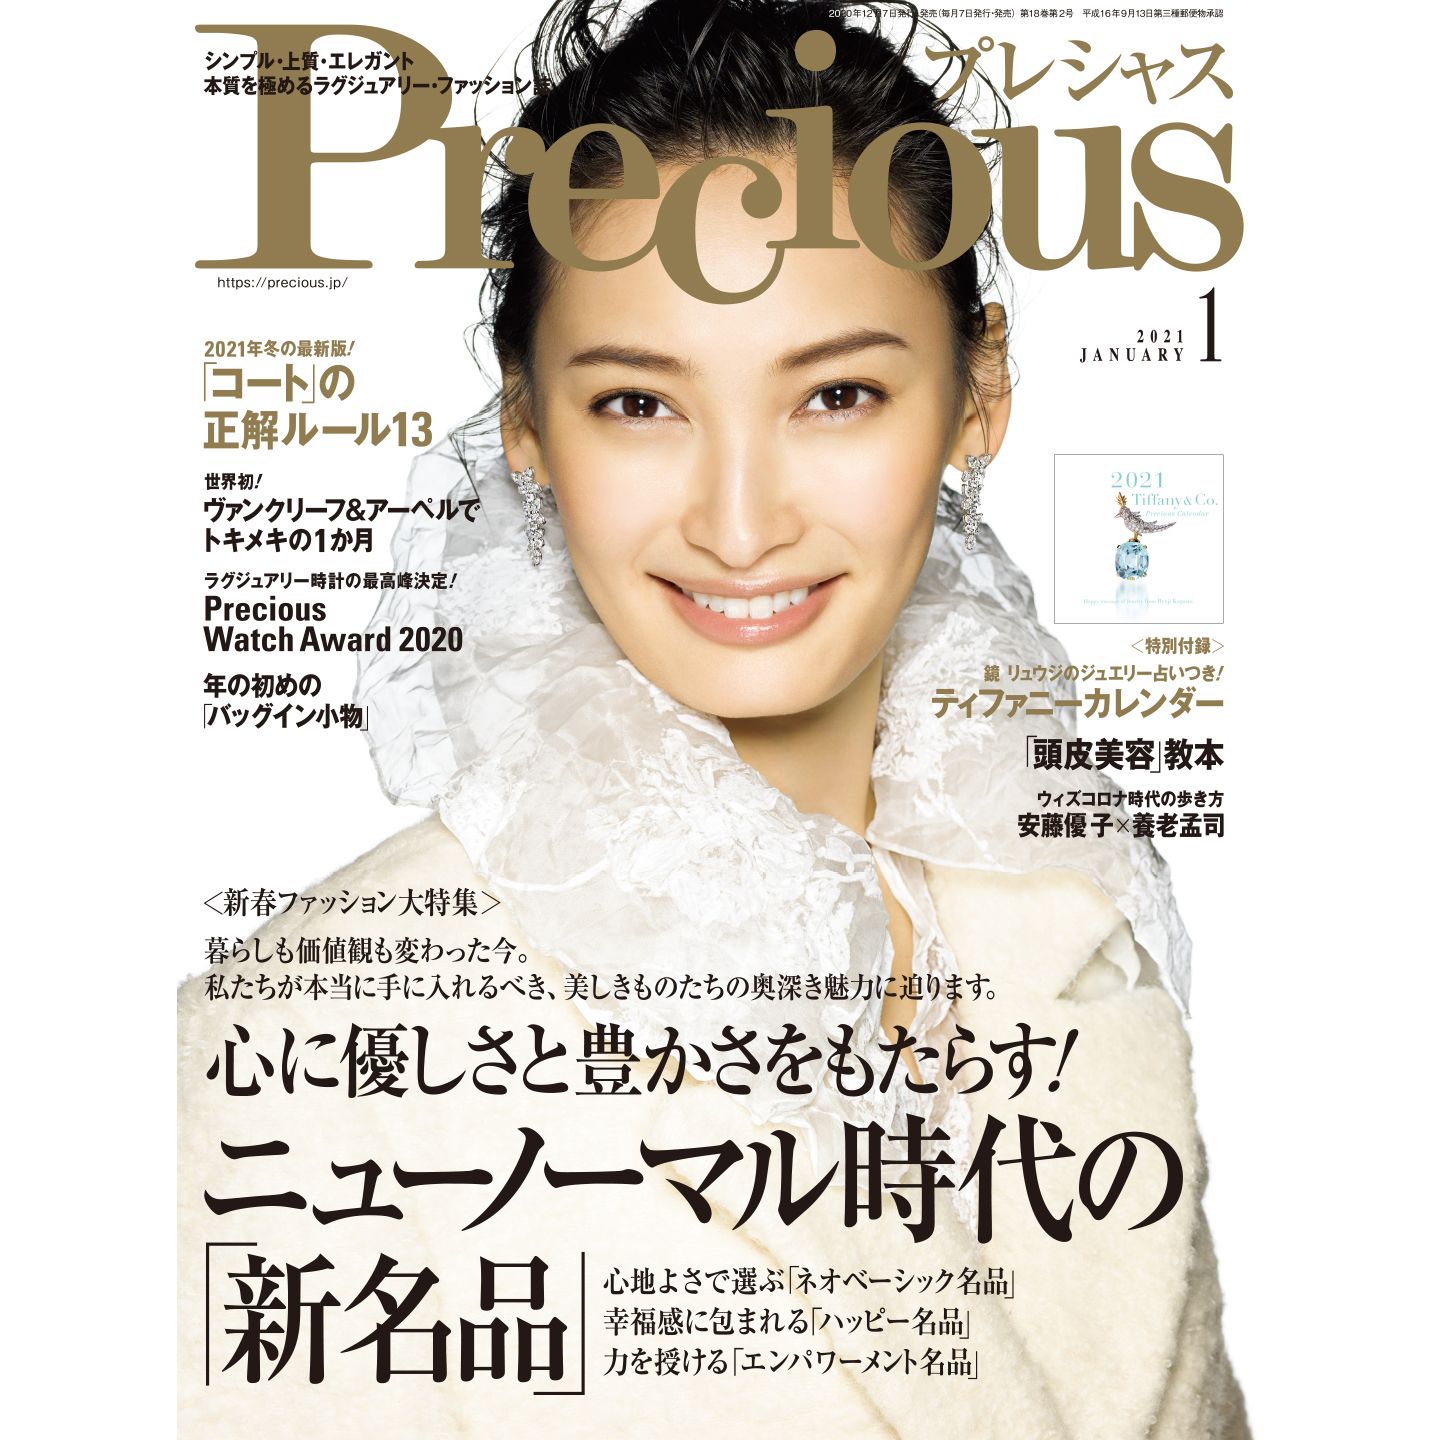 大政絢の私服 12月7日発売「Precious（プレシャス）」1月号の表紙衣装 